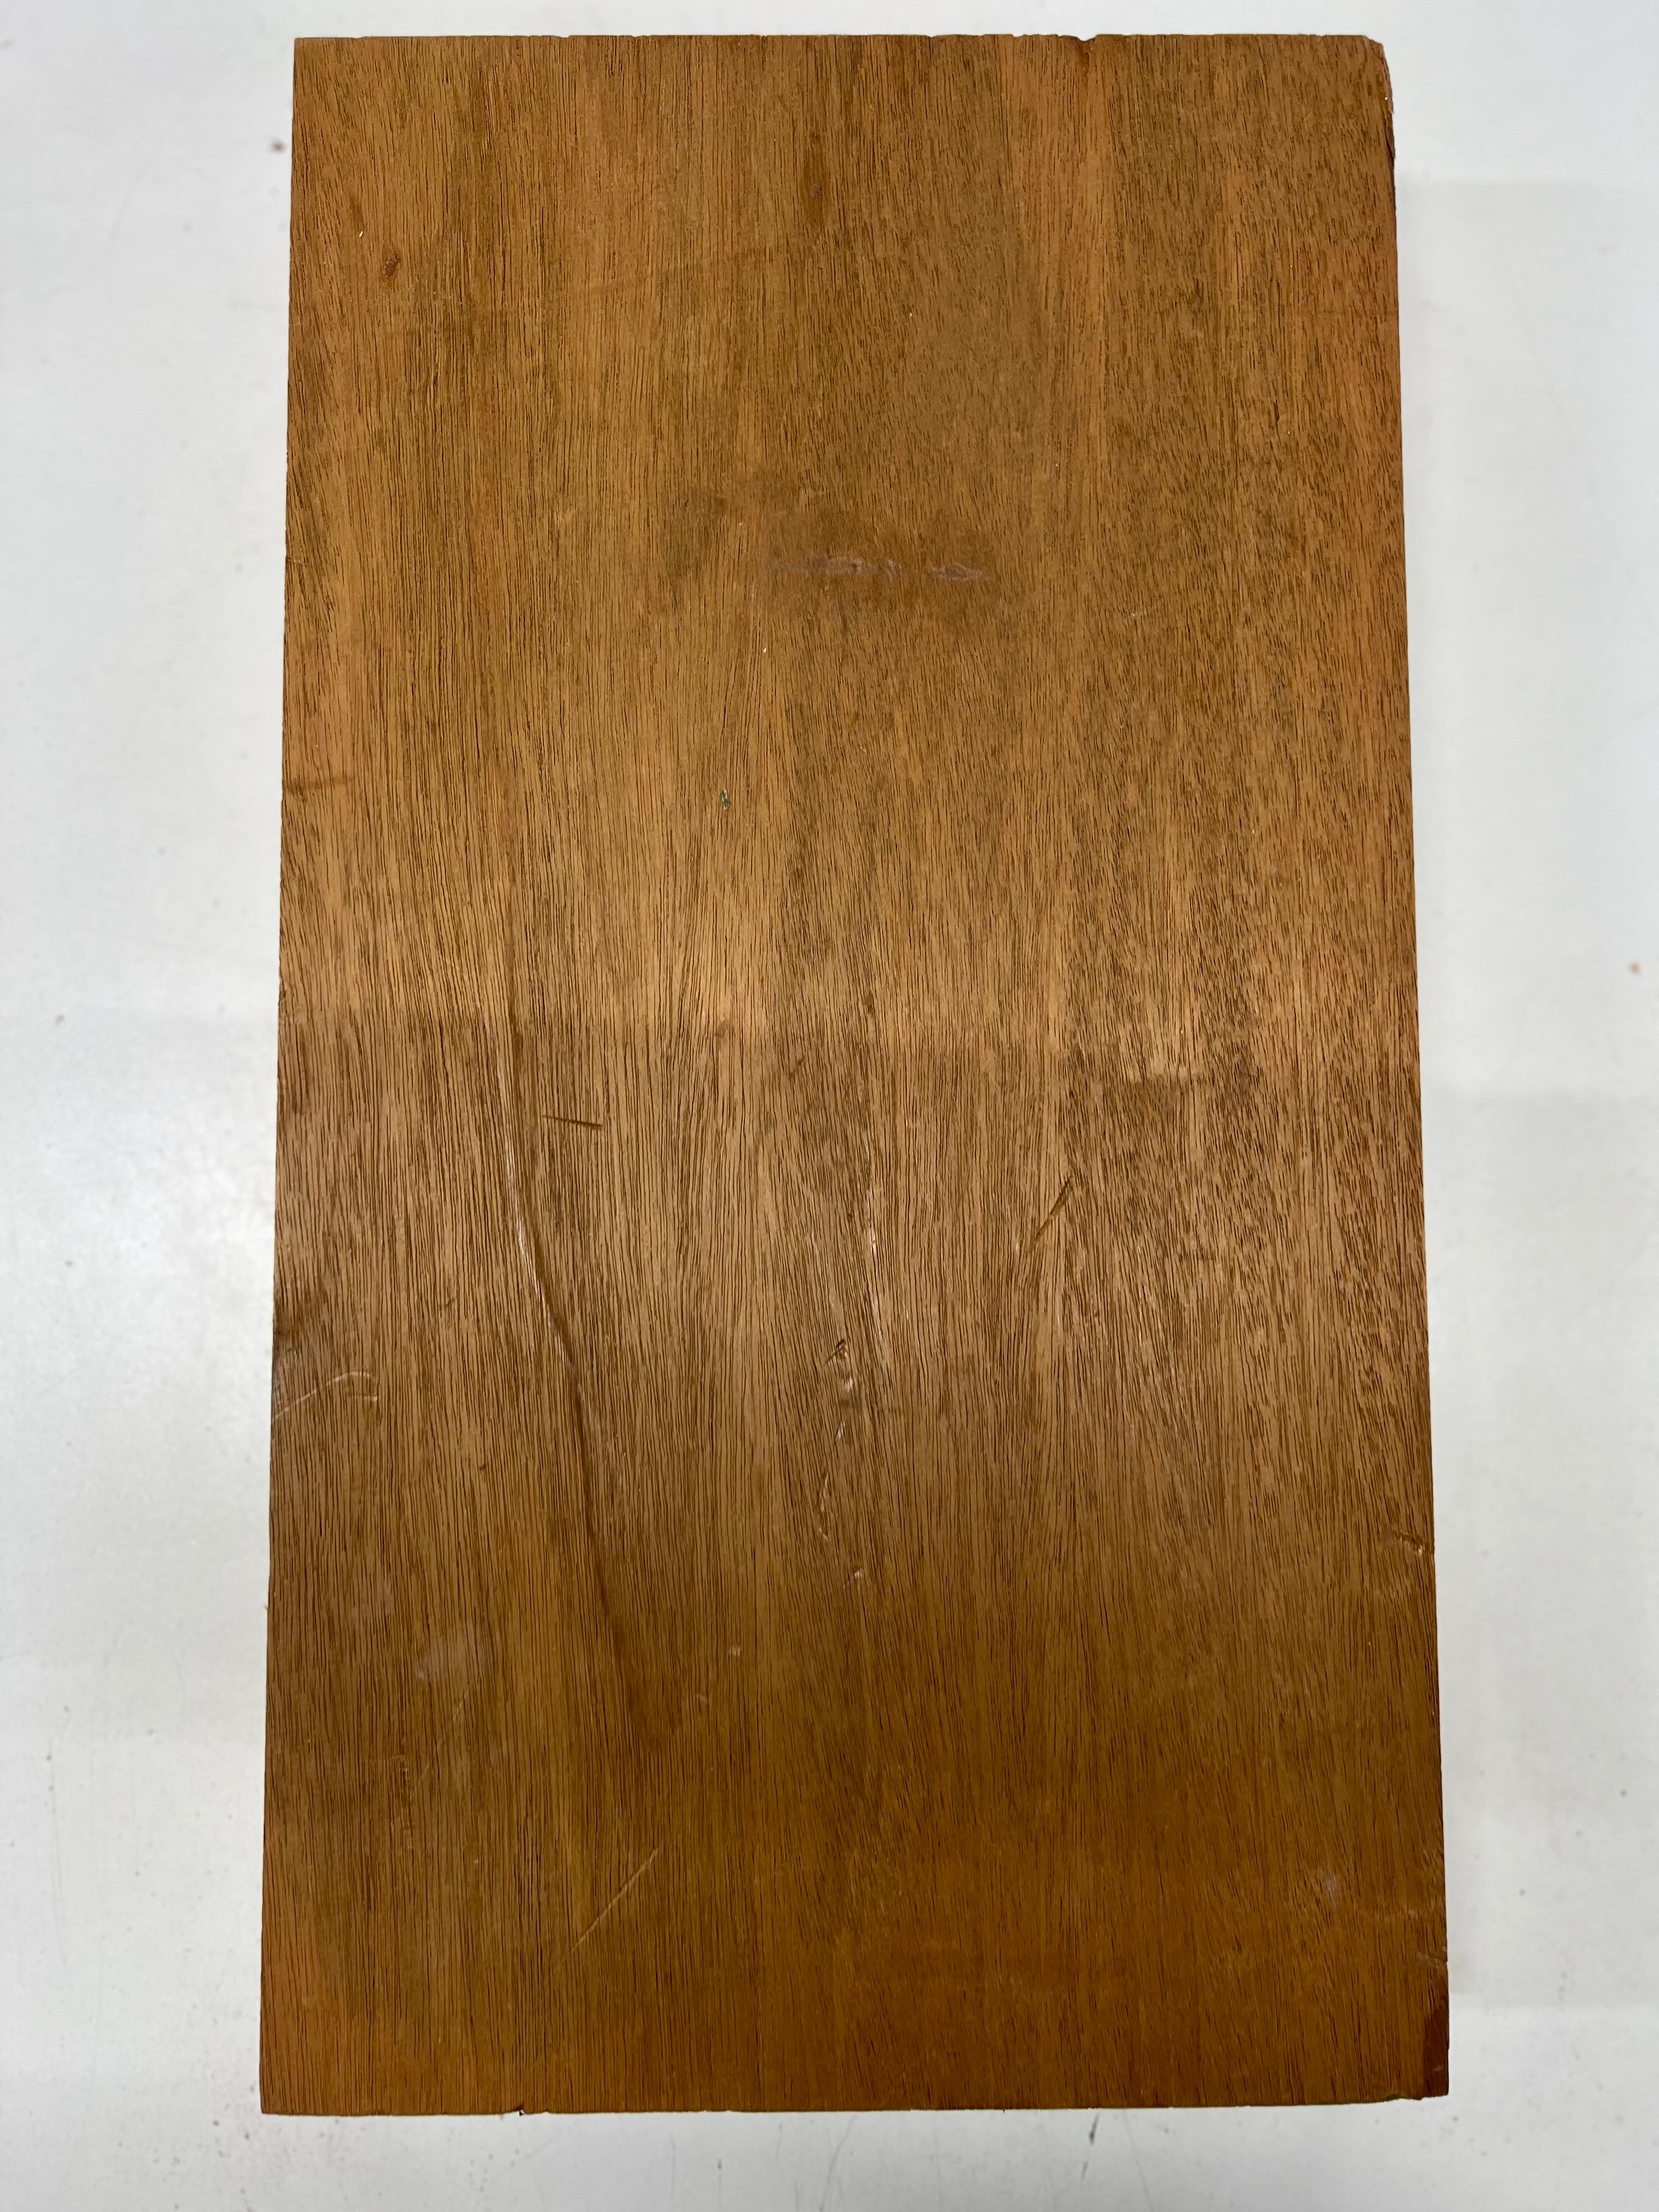 Honduran Mahogany Lumber Board Wood Blank 19&quot;x10-7/8&quot;x2-5/8&quot; 